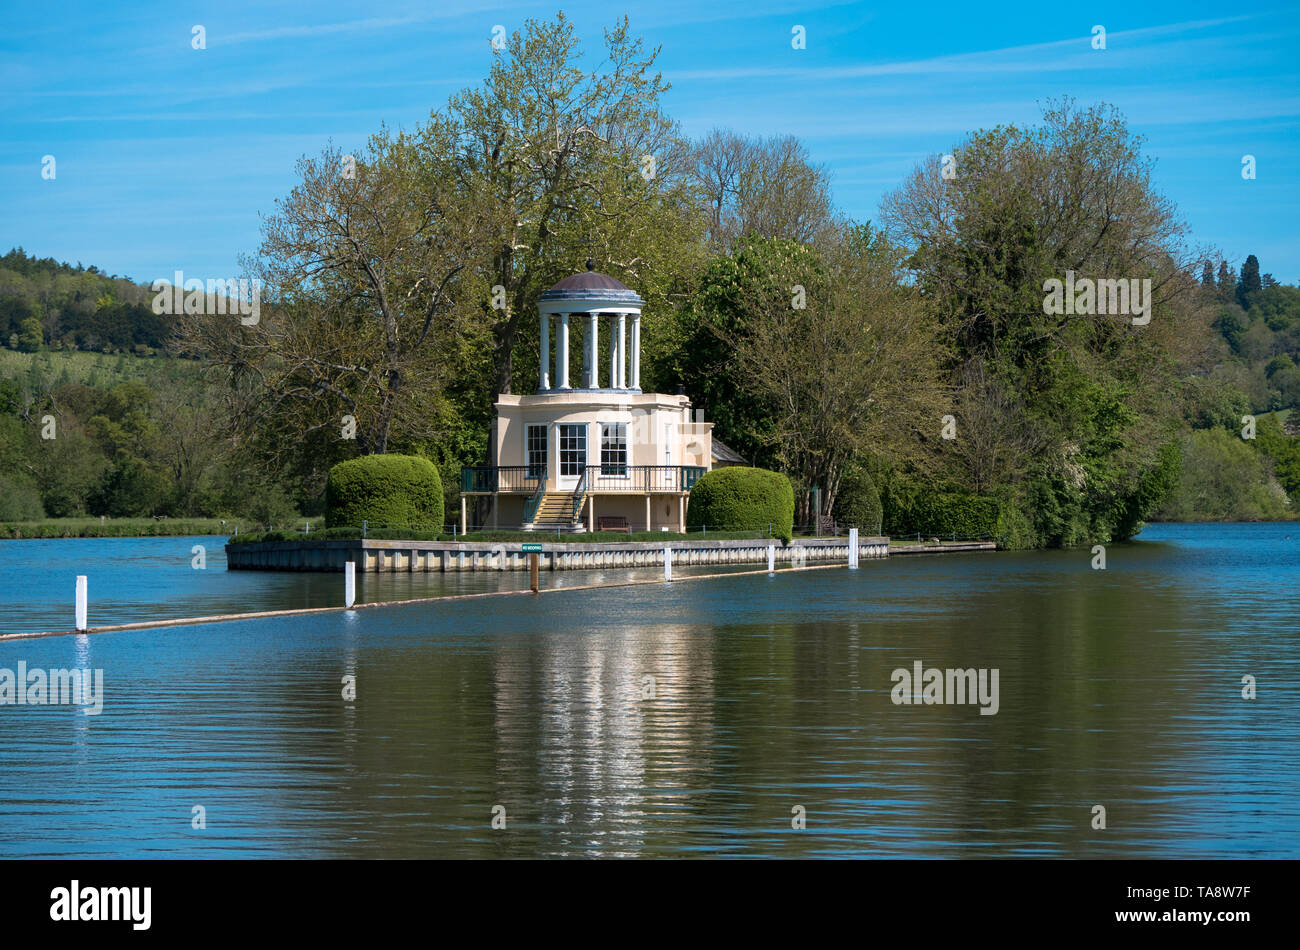 L'Île du Temple, Point de départ d'Henley Royal Regatta, Henley-on-Thames, Oxfordshire, England, UK, FR. Banque D'Images